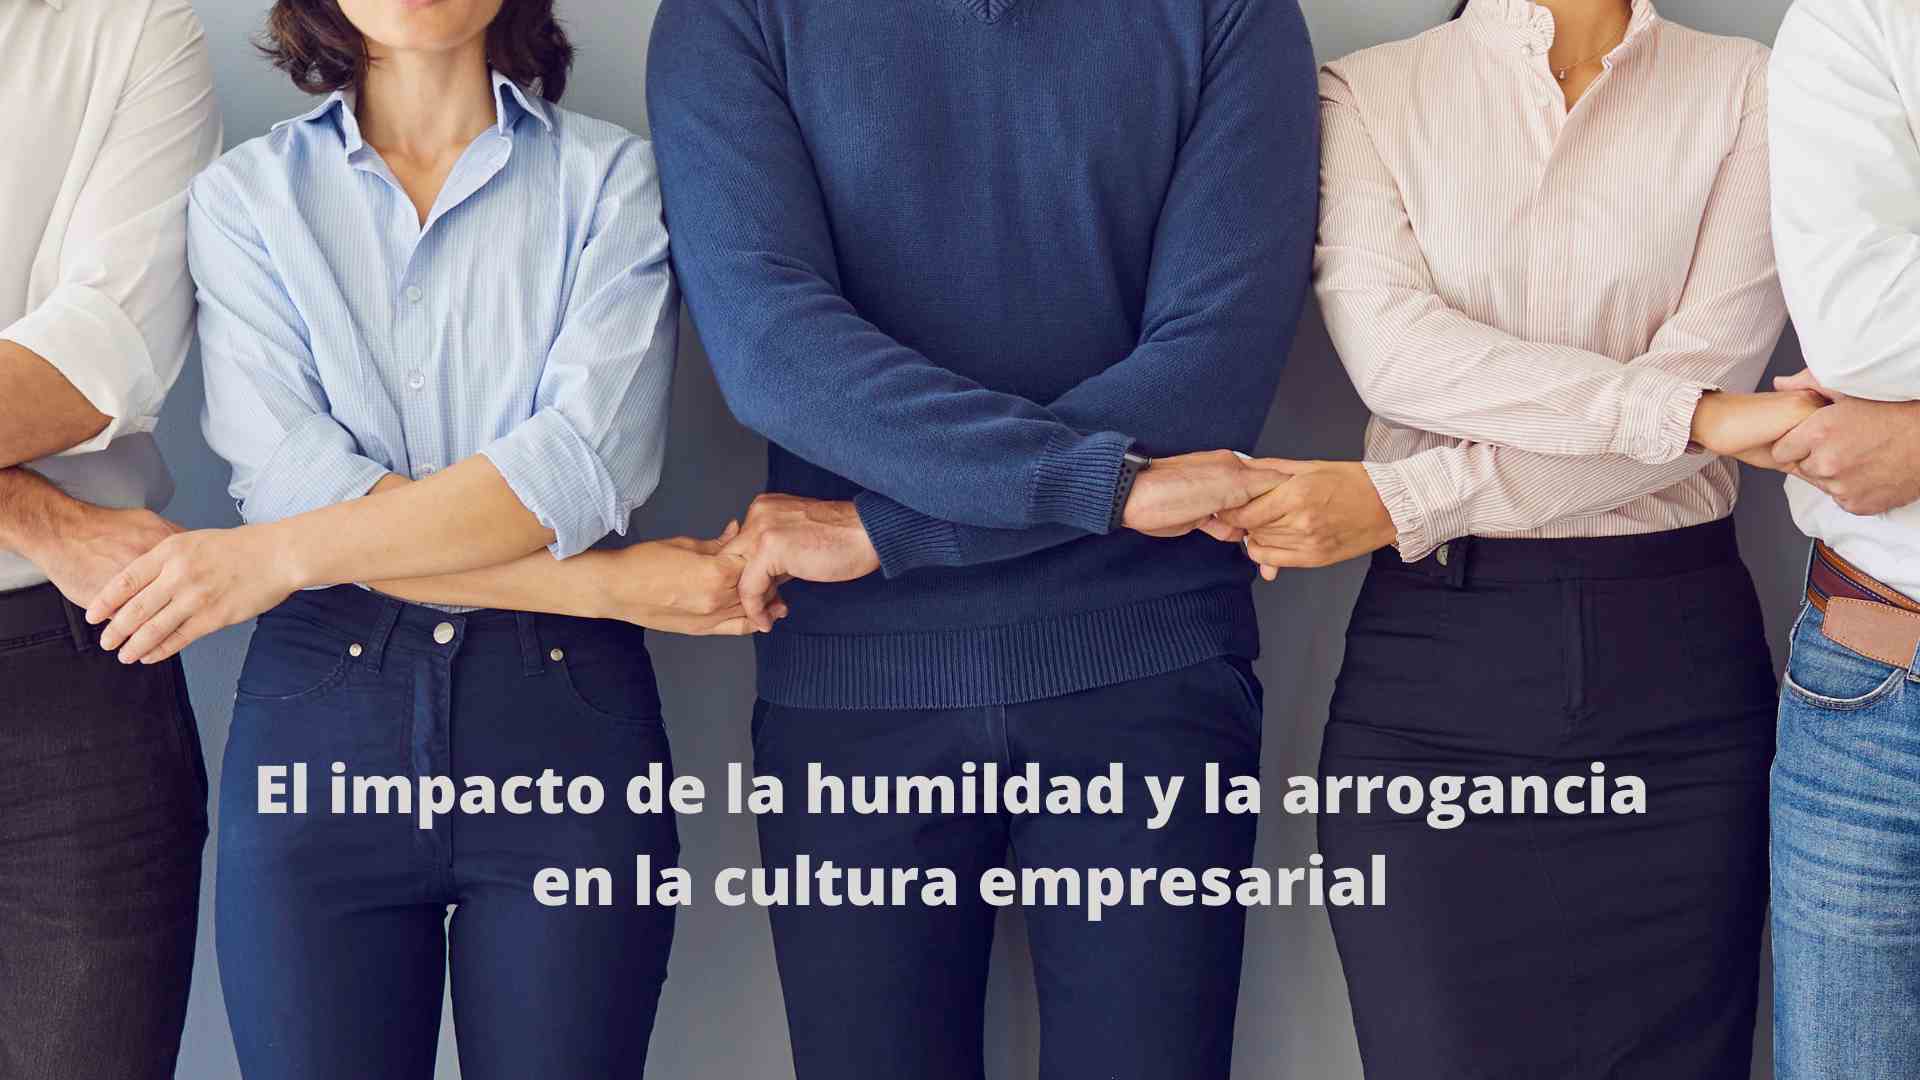 El impacto de la humildad y la arrogancia en la cultura empresarial